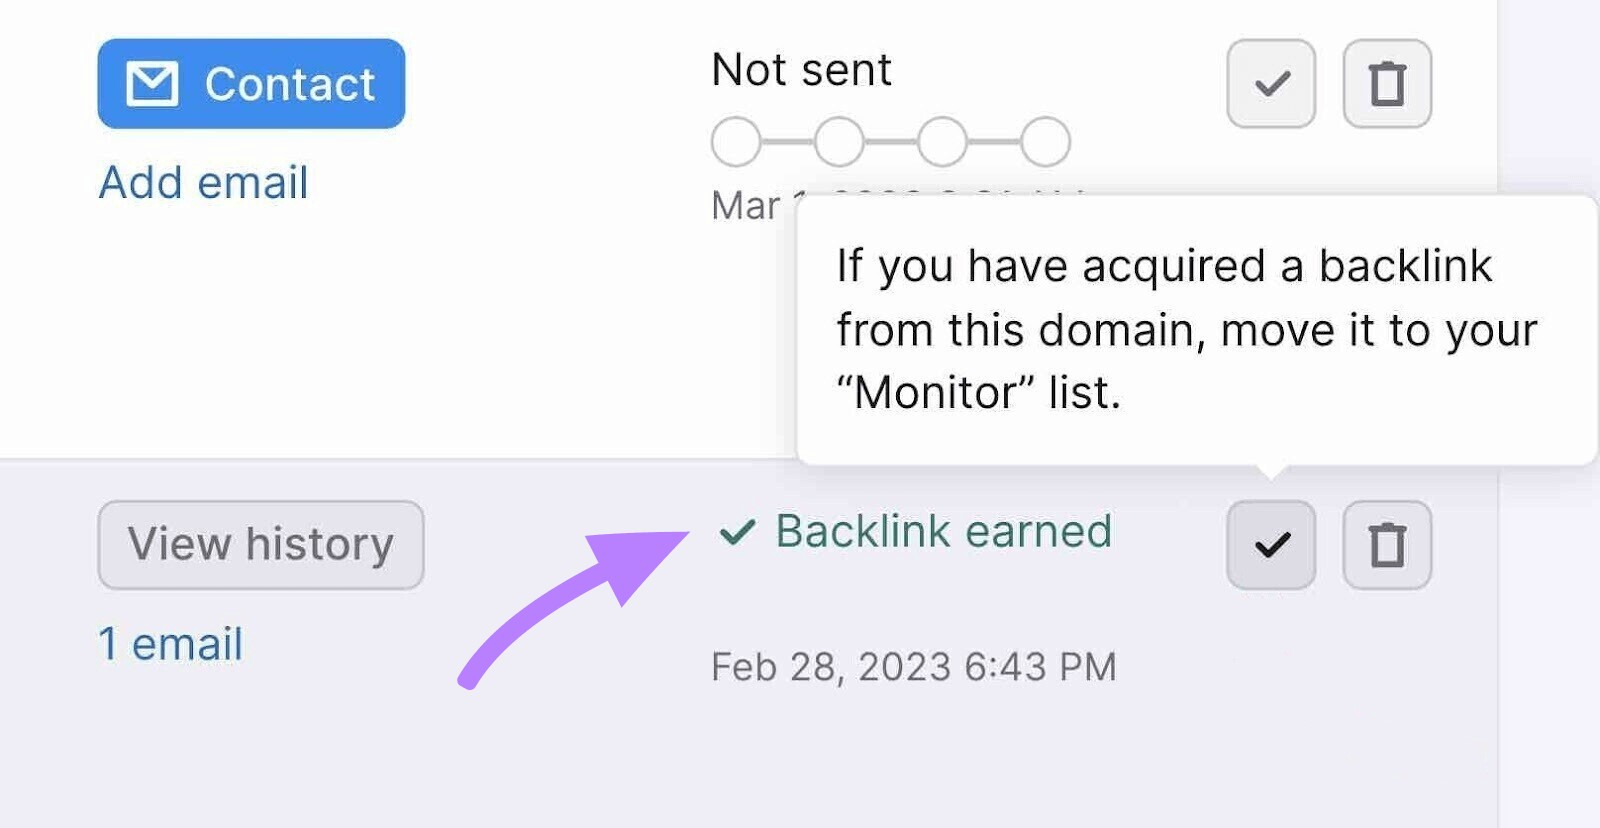 “Backlink earned” notification